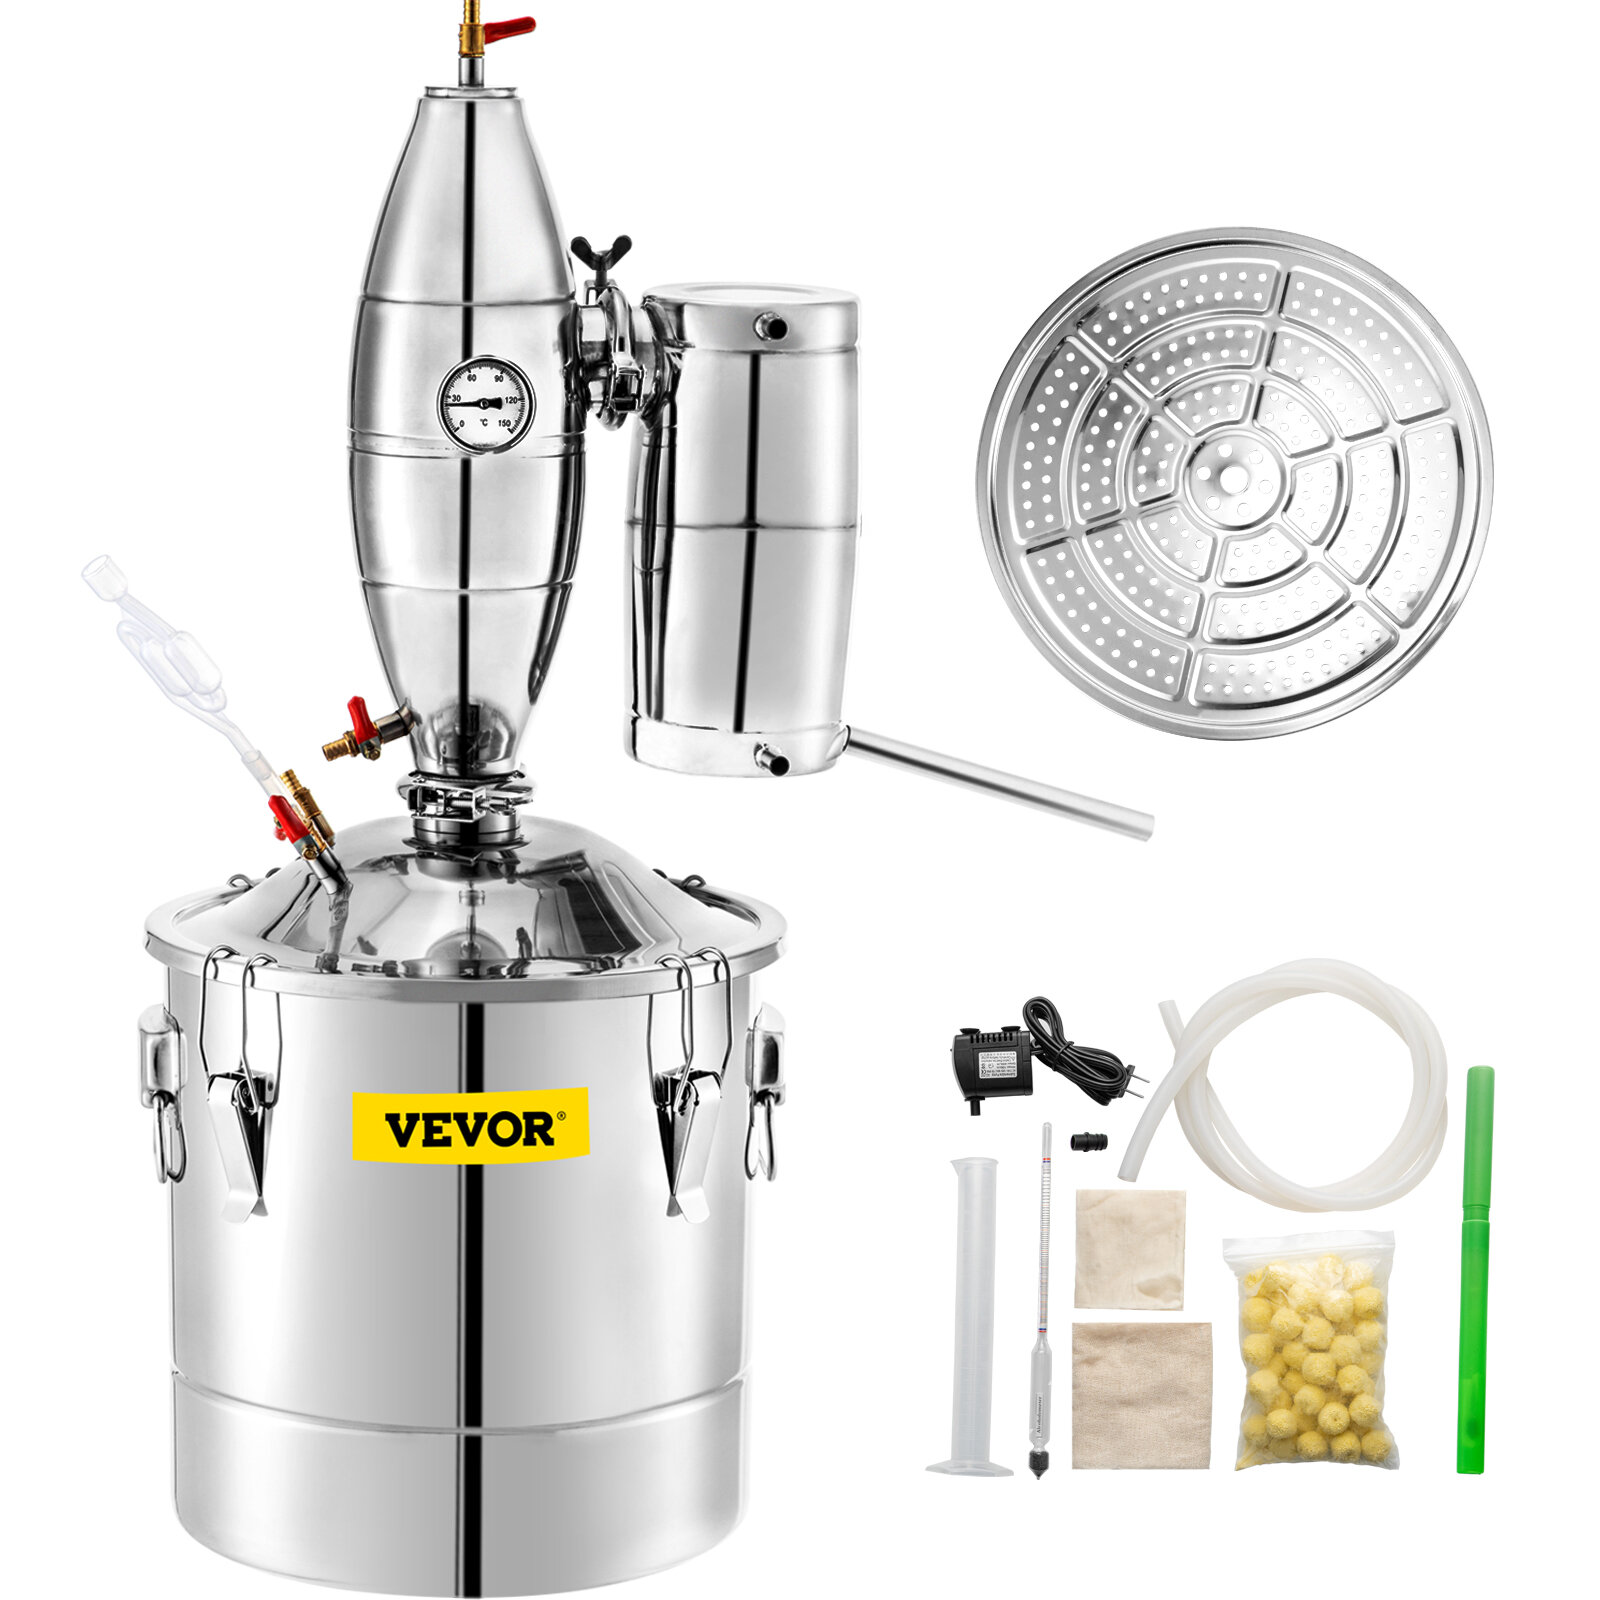 Distillateur d'eau Easy – Distillateur pour la distillation de l'eau